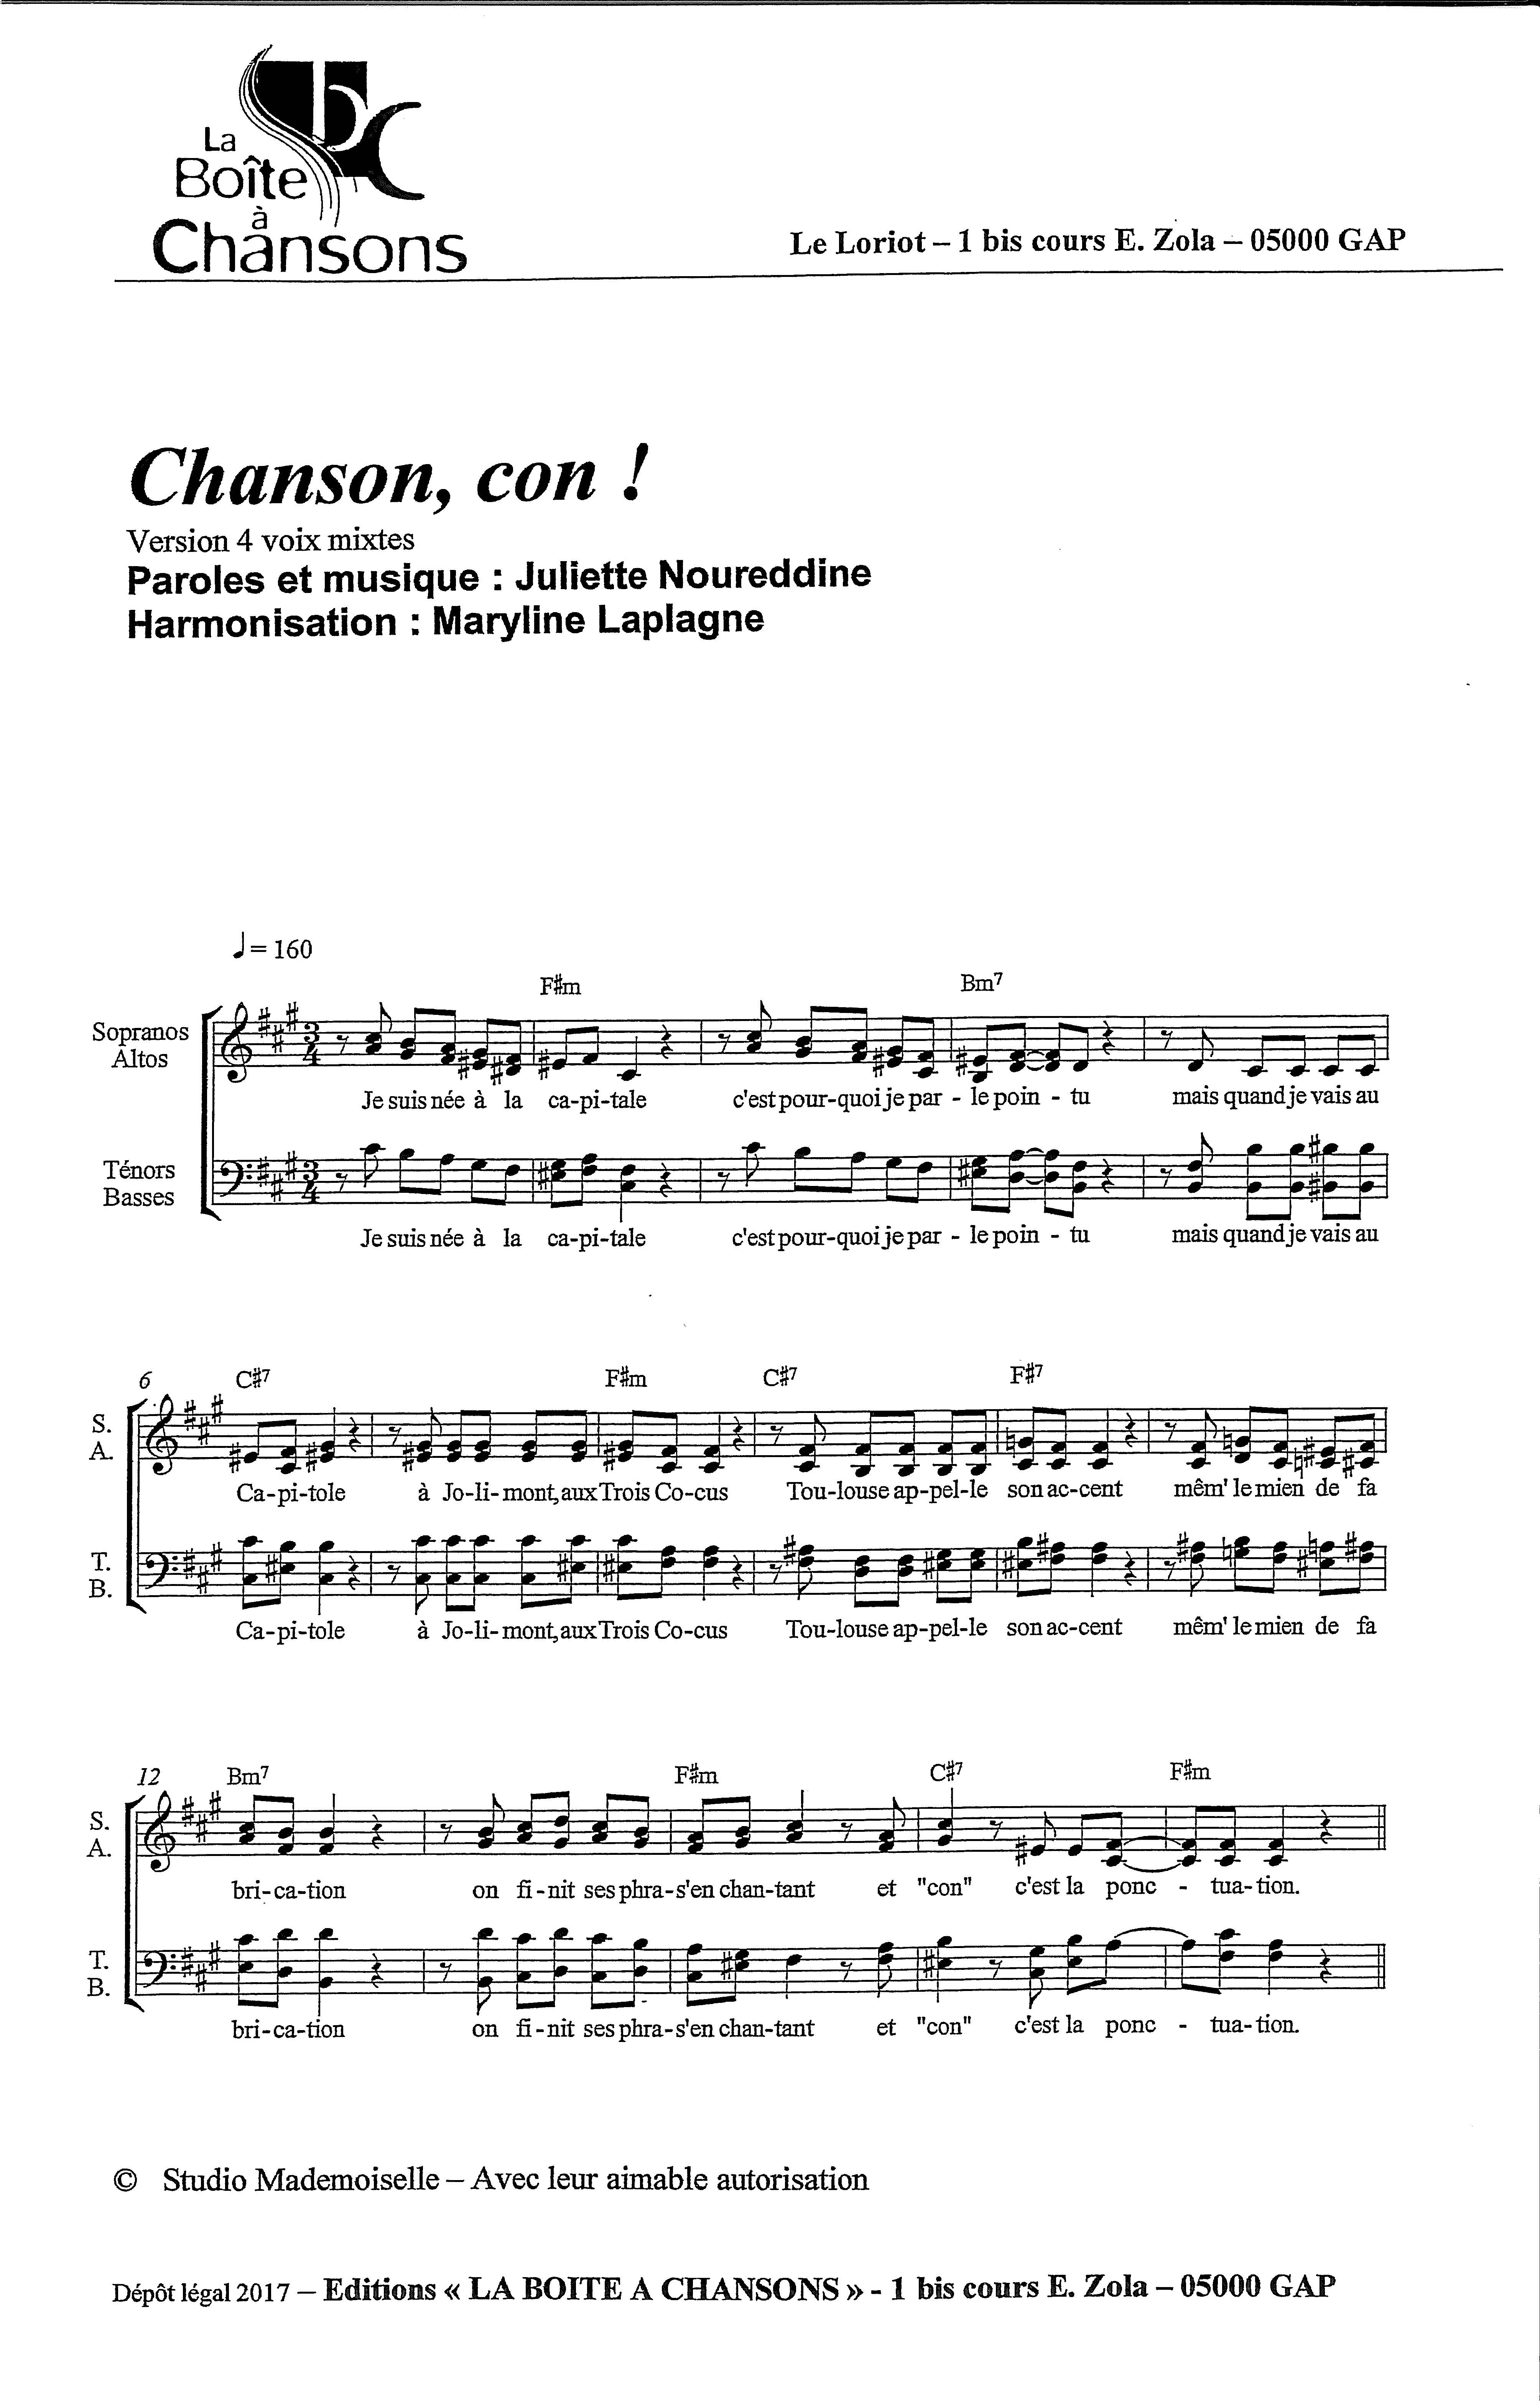 CHANSON, CON ! version 4 voix mixtes